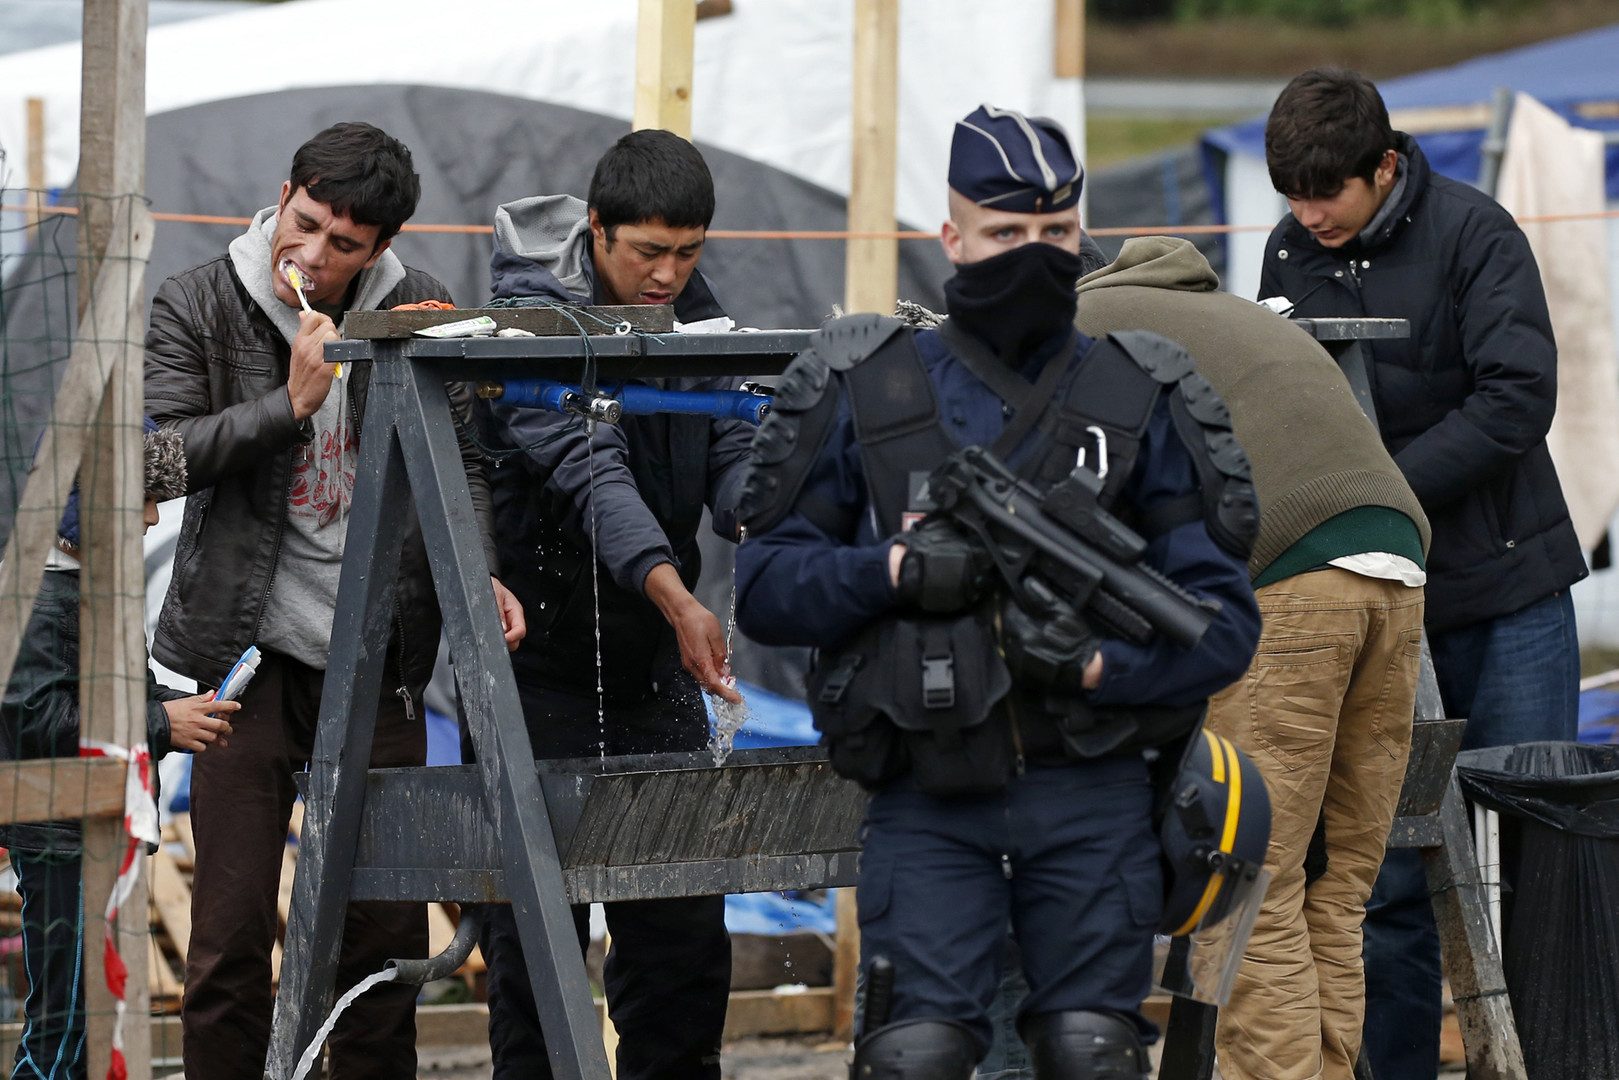 Des résidents de Calais s'opposent aux bulldozers et à l'ultimatum des forces de l'ordre